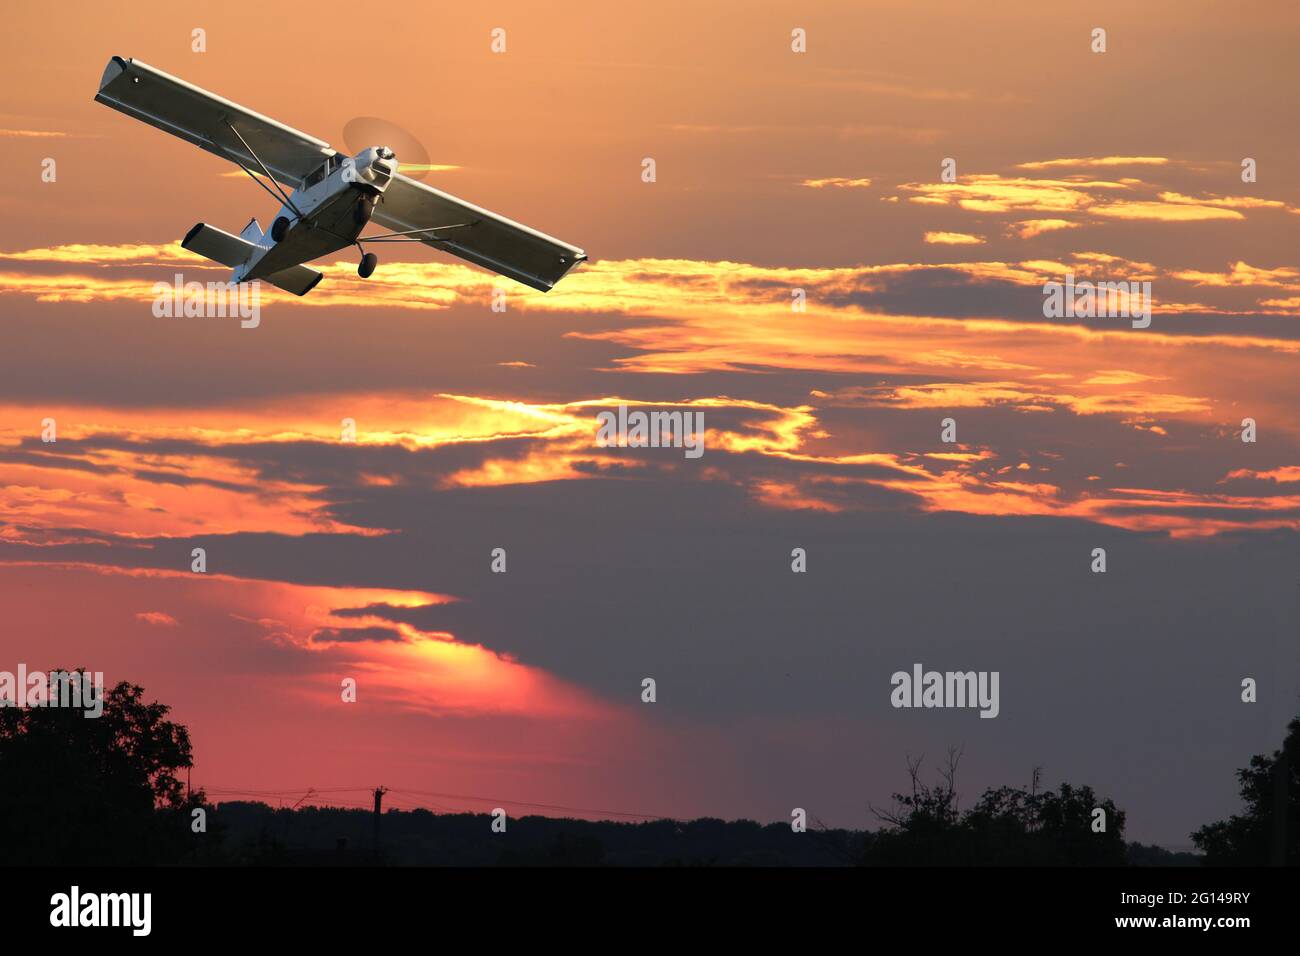 Avion privé à hélice unique contre le ciel dramatique - composition numérique. Banque D'Images